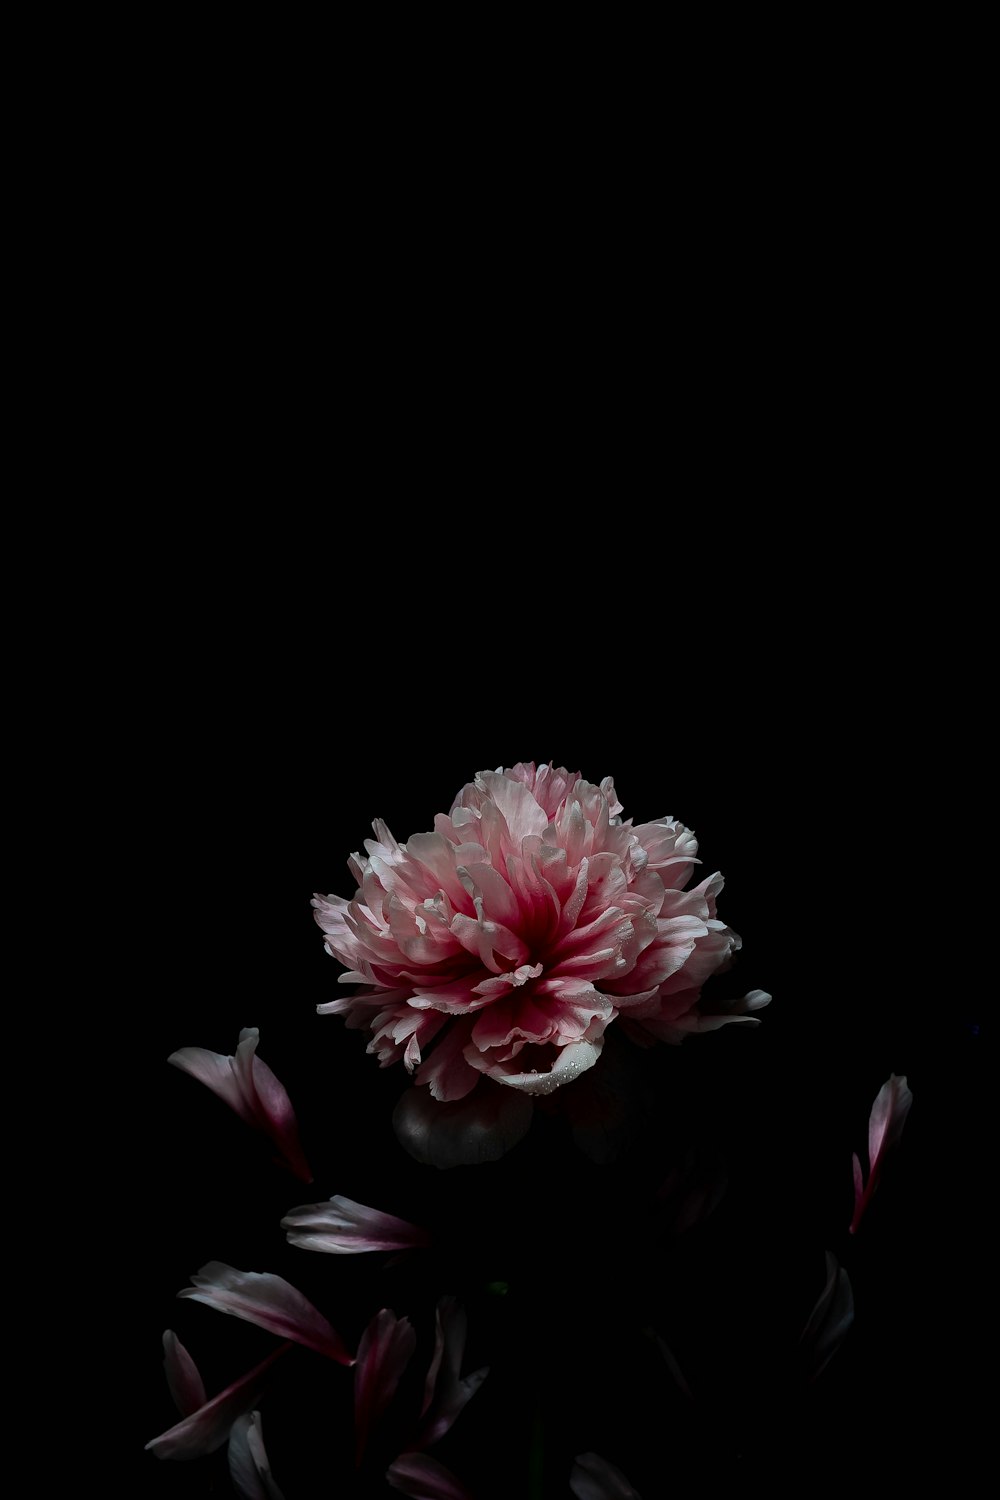 Foto flor rosa y blanca sobre fondo negro – Imagen Fondo de pantalla gratis  en Unsplash